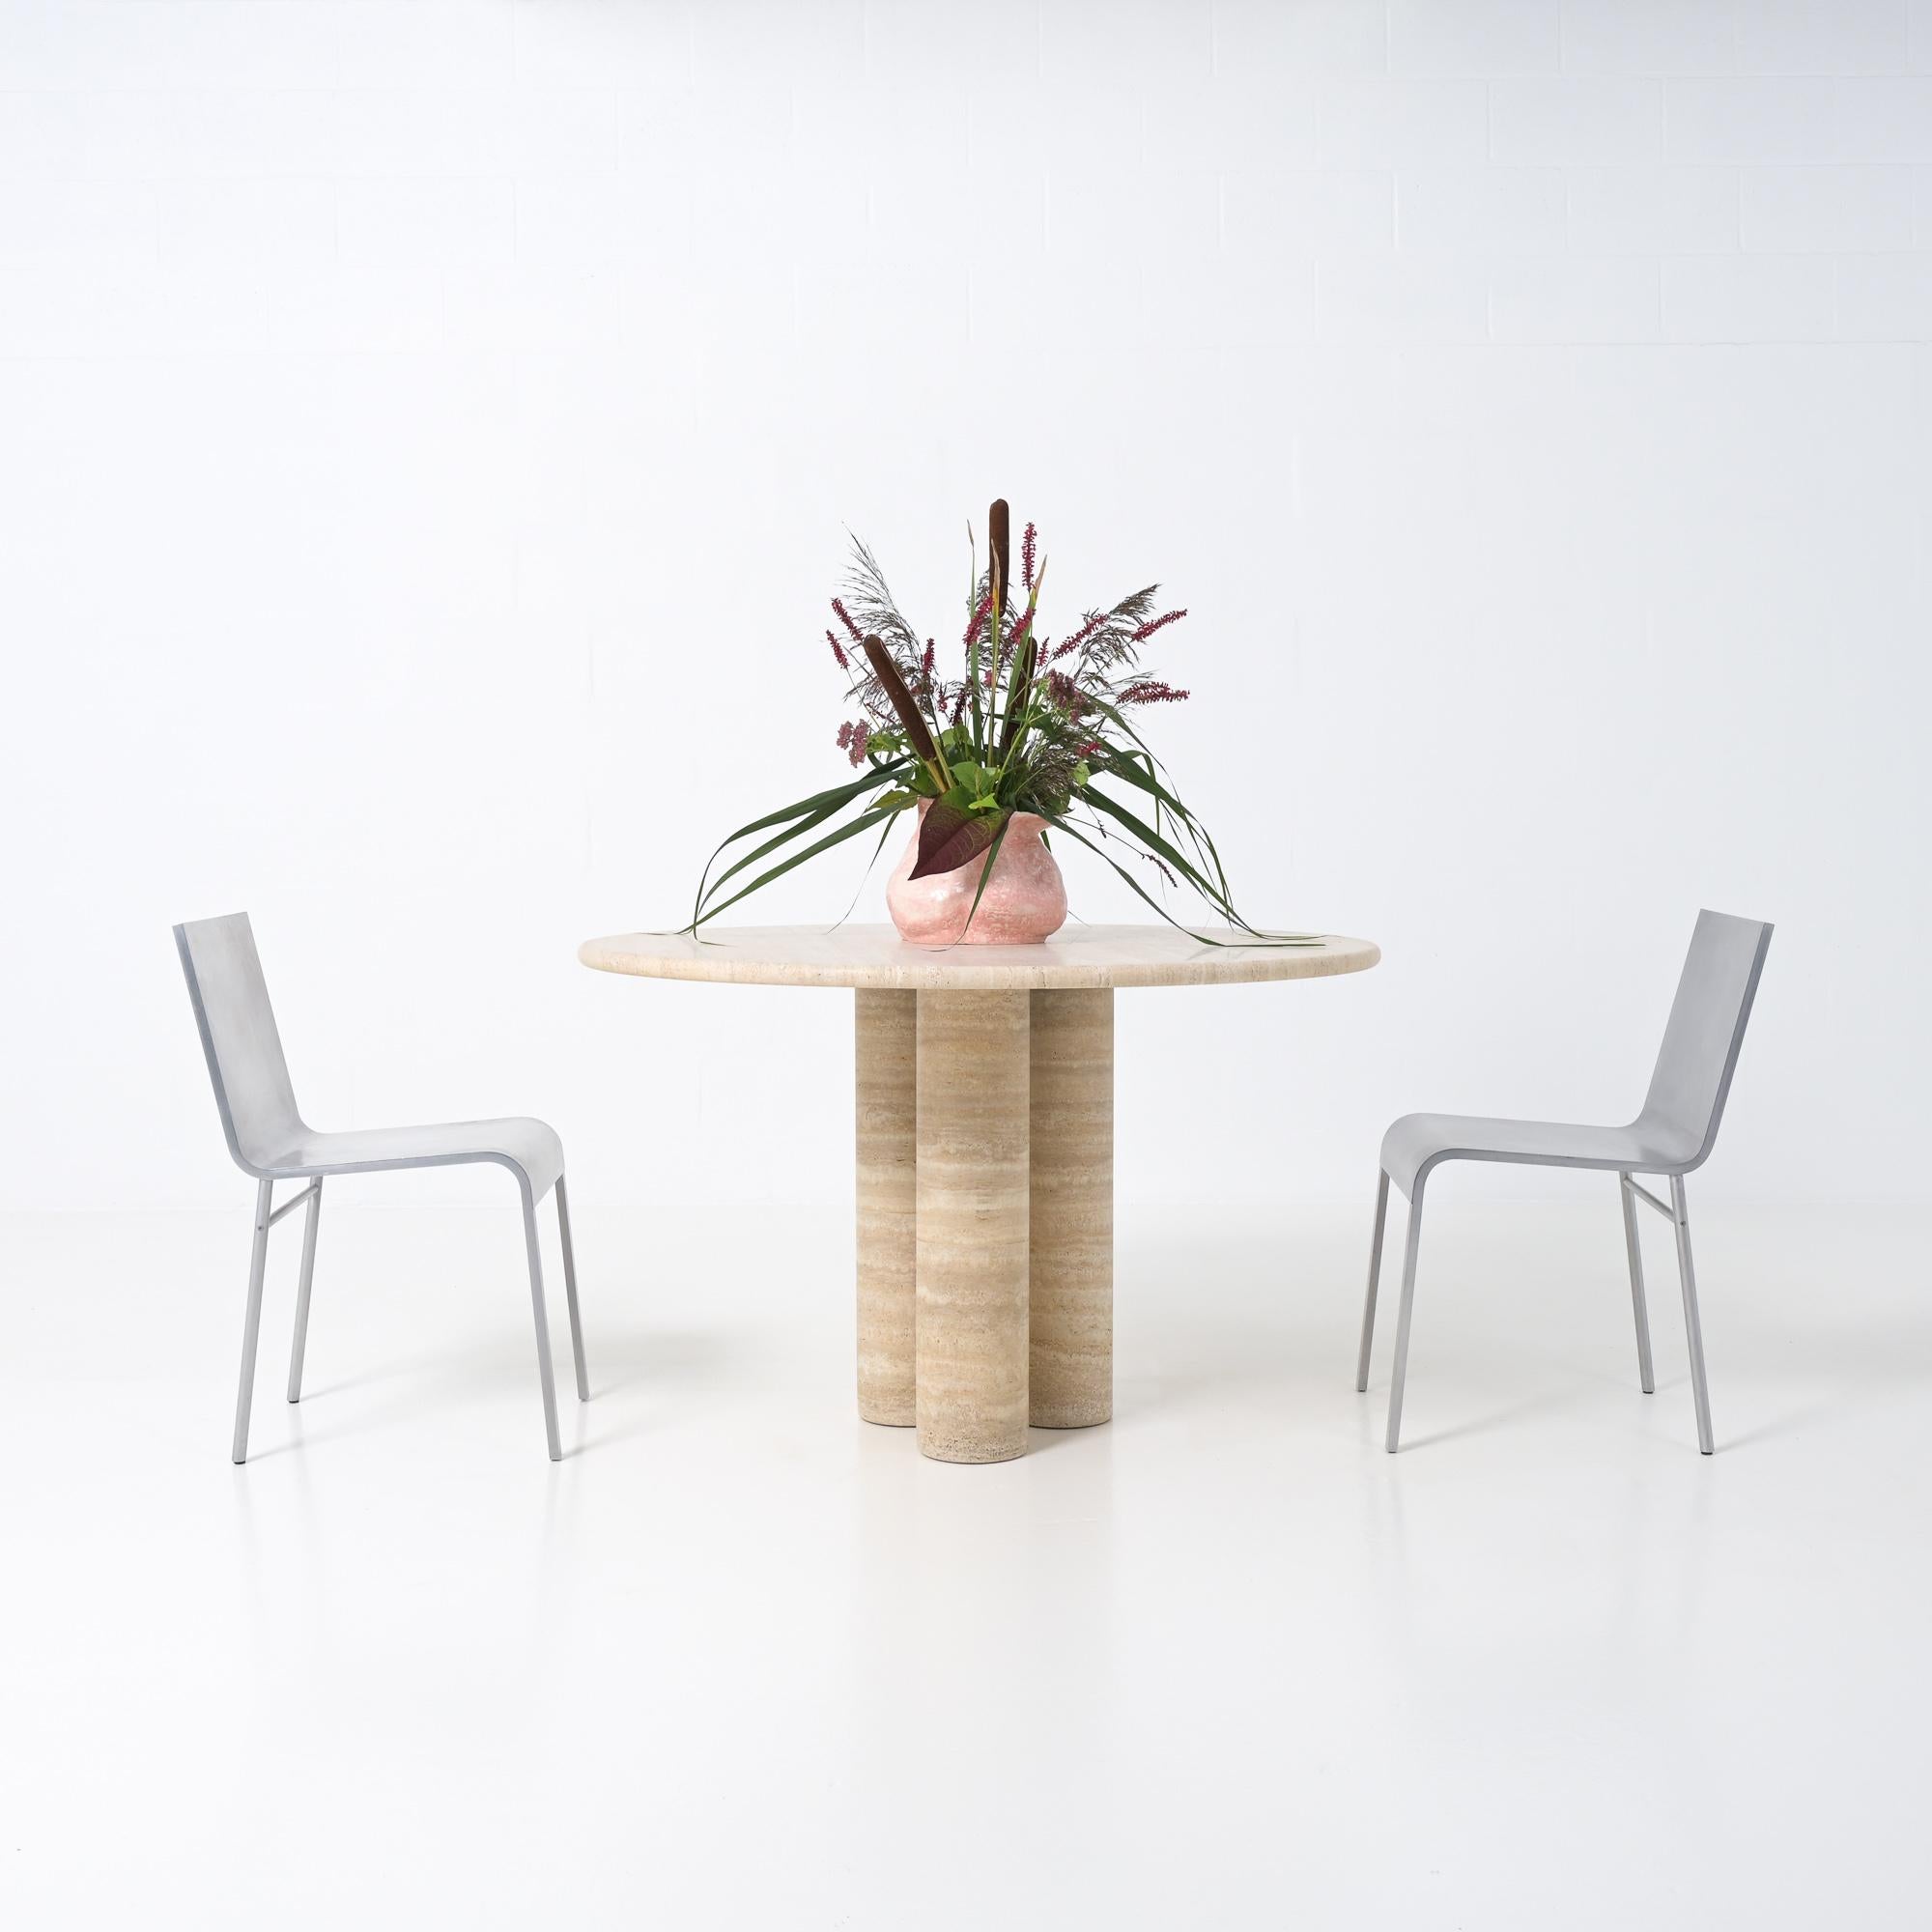 Cette table de salle à manger ronde unique a été conçue par Mario Bellini pour Cassina, un design italien des années 1970. Mario Bellini (1935) est un designer et architecte italien. Pour concevoir la table à manger 